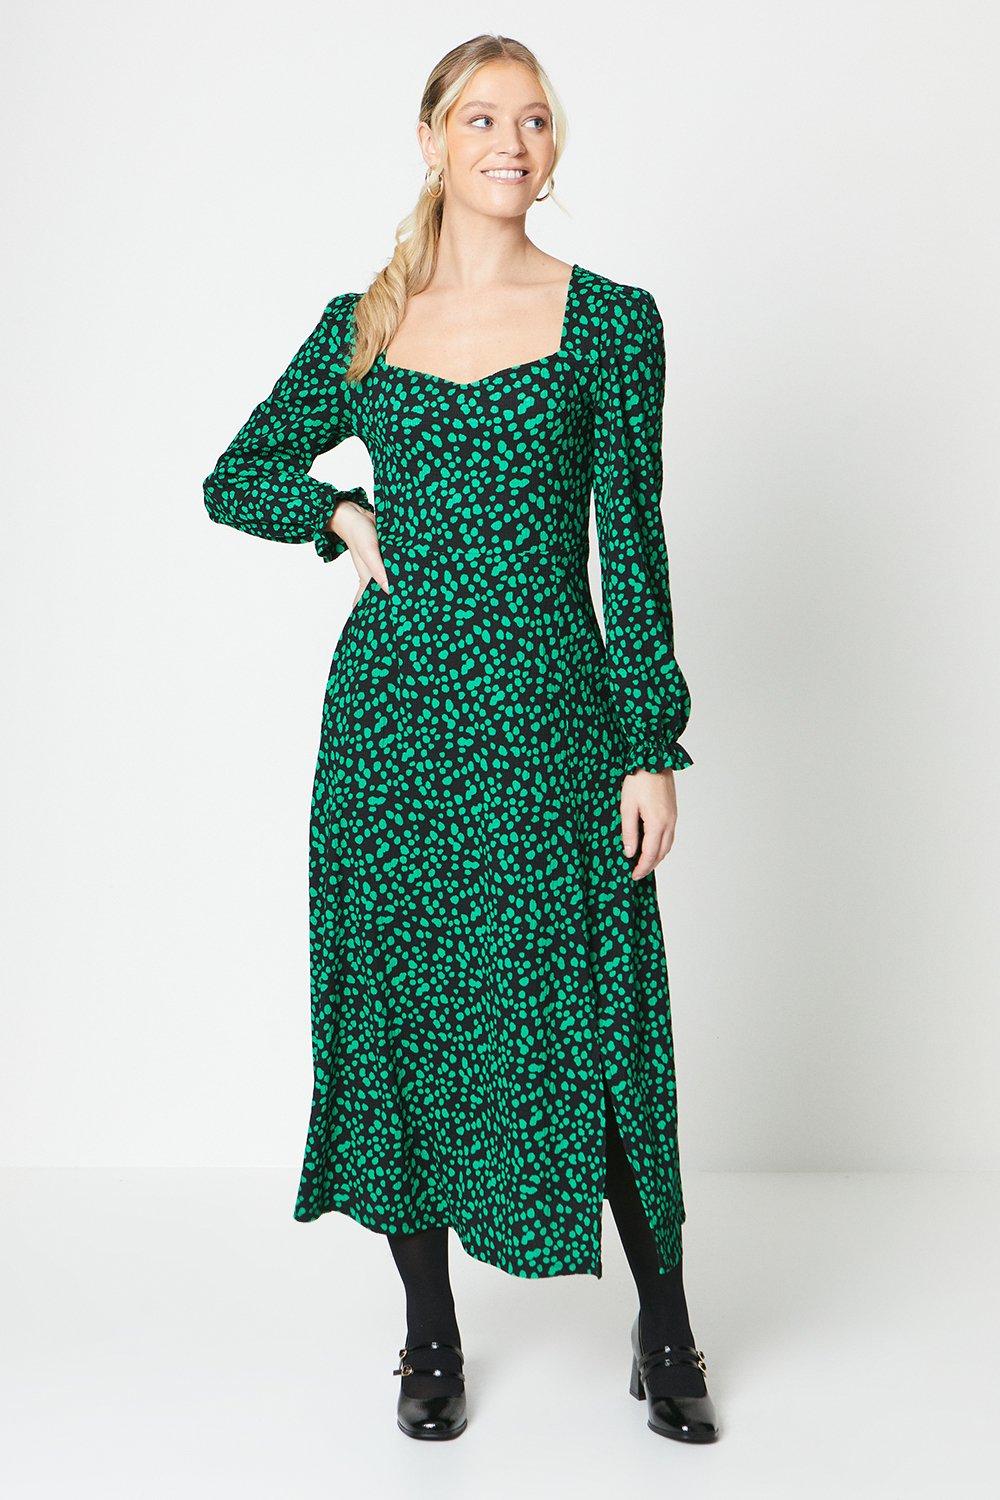 Women's Green Spot Sweetheart Neckline Midi Dress - 16